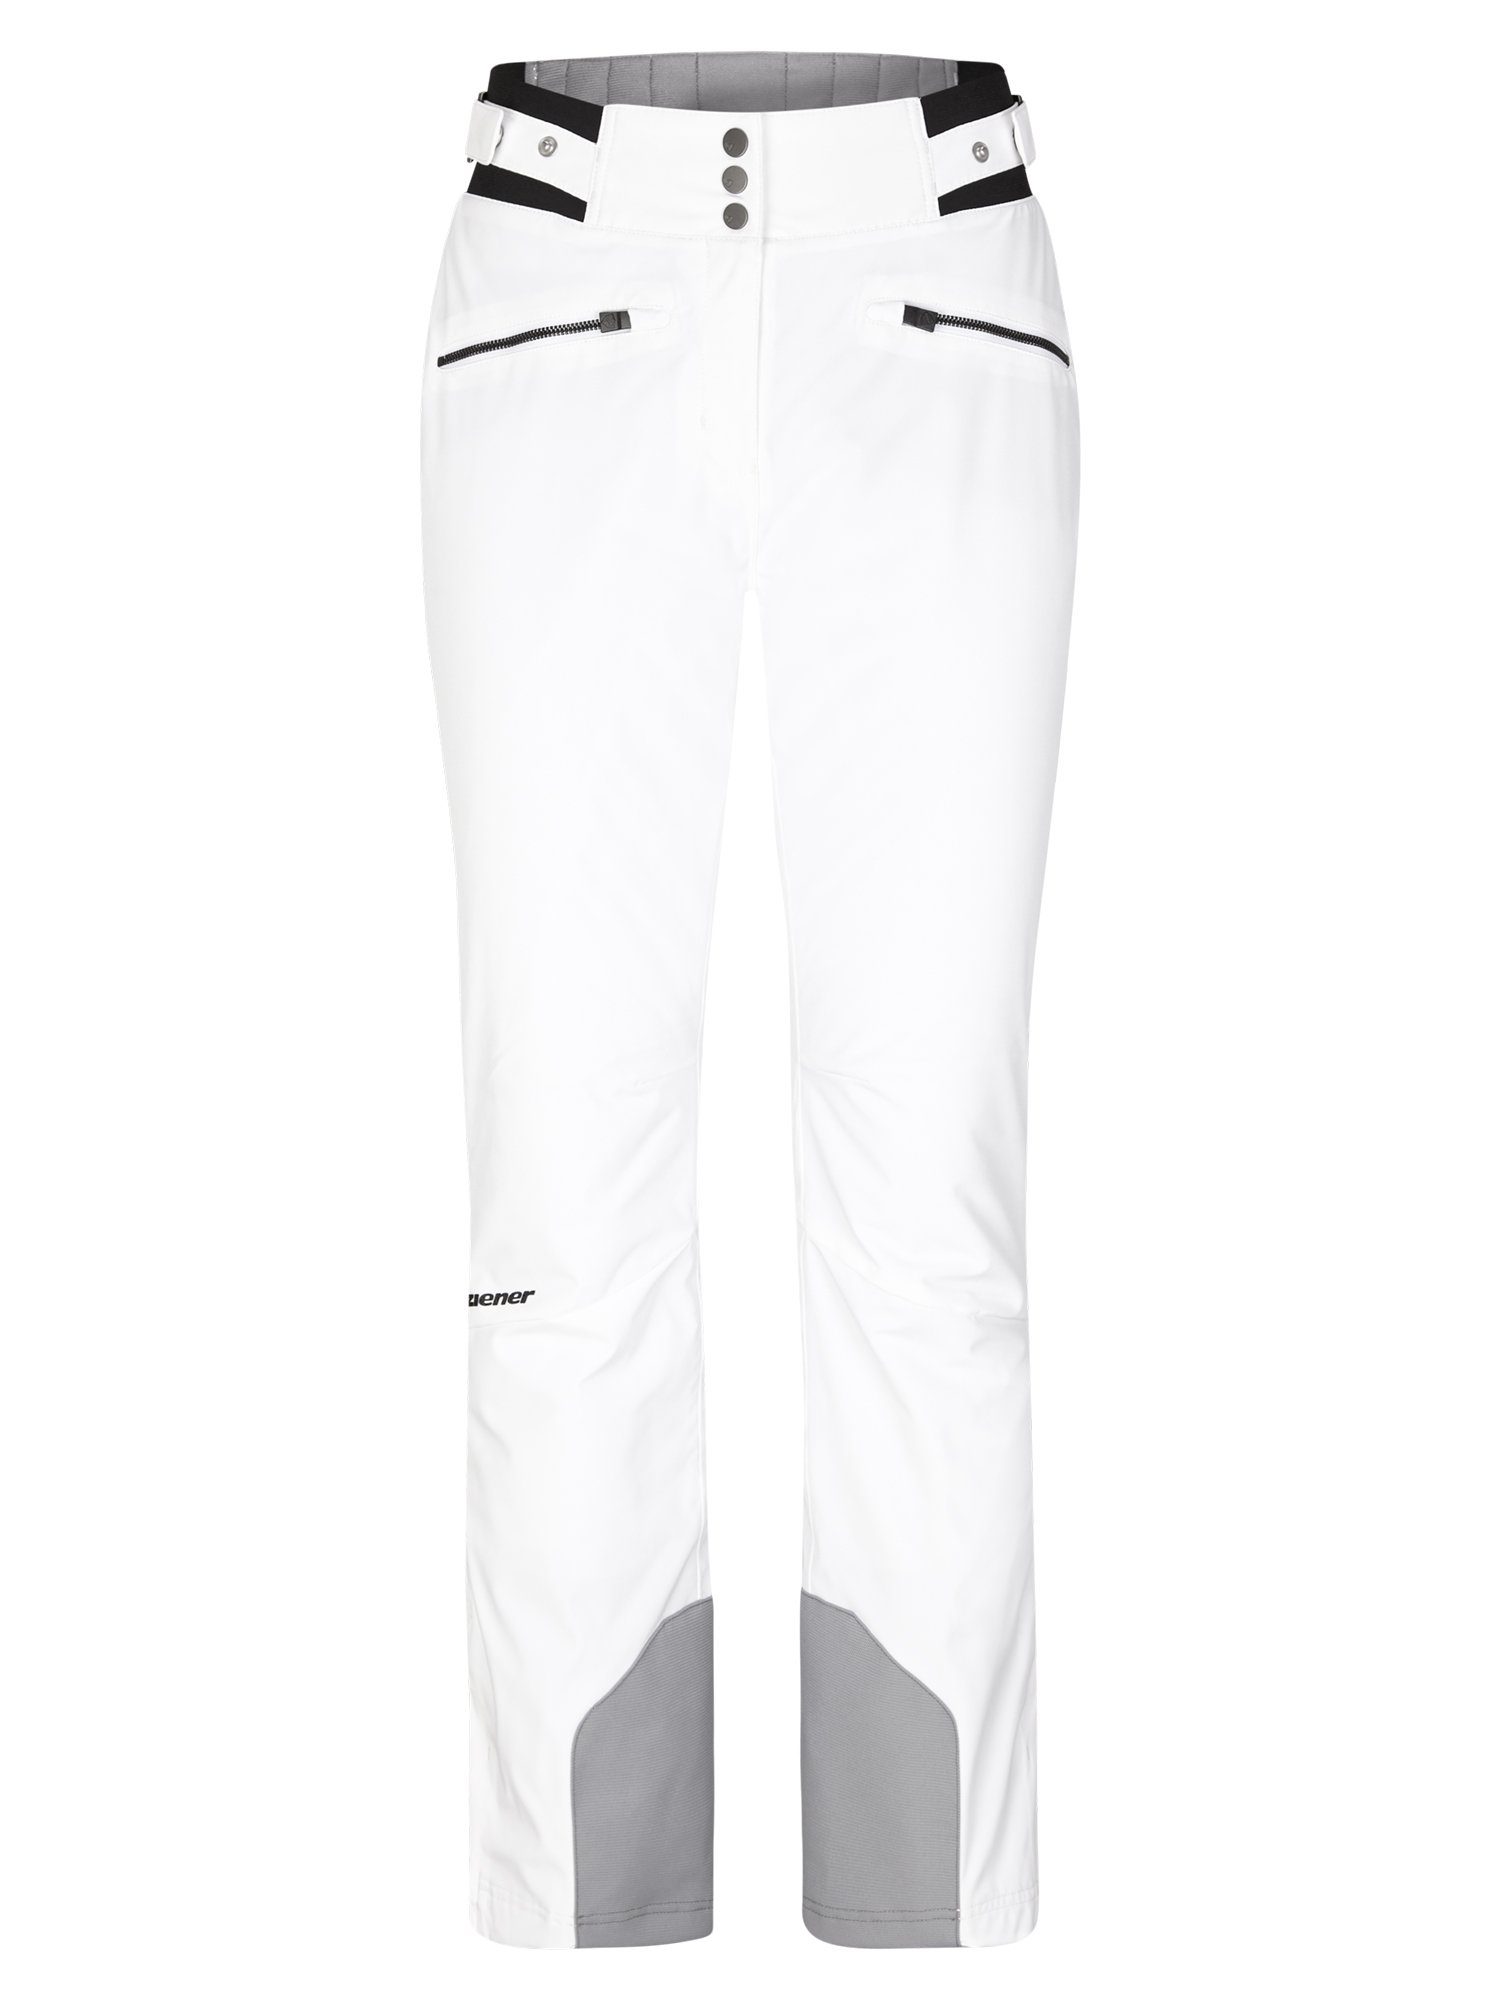 Weiße Ziener Skihosen für Damen online kaufen | OTTO